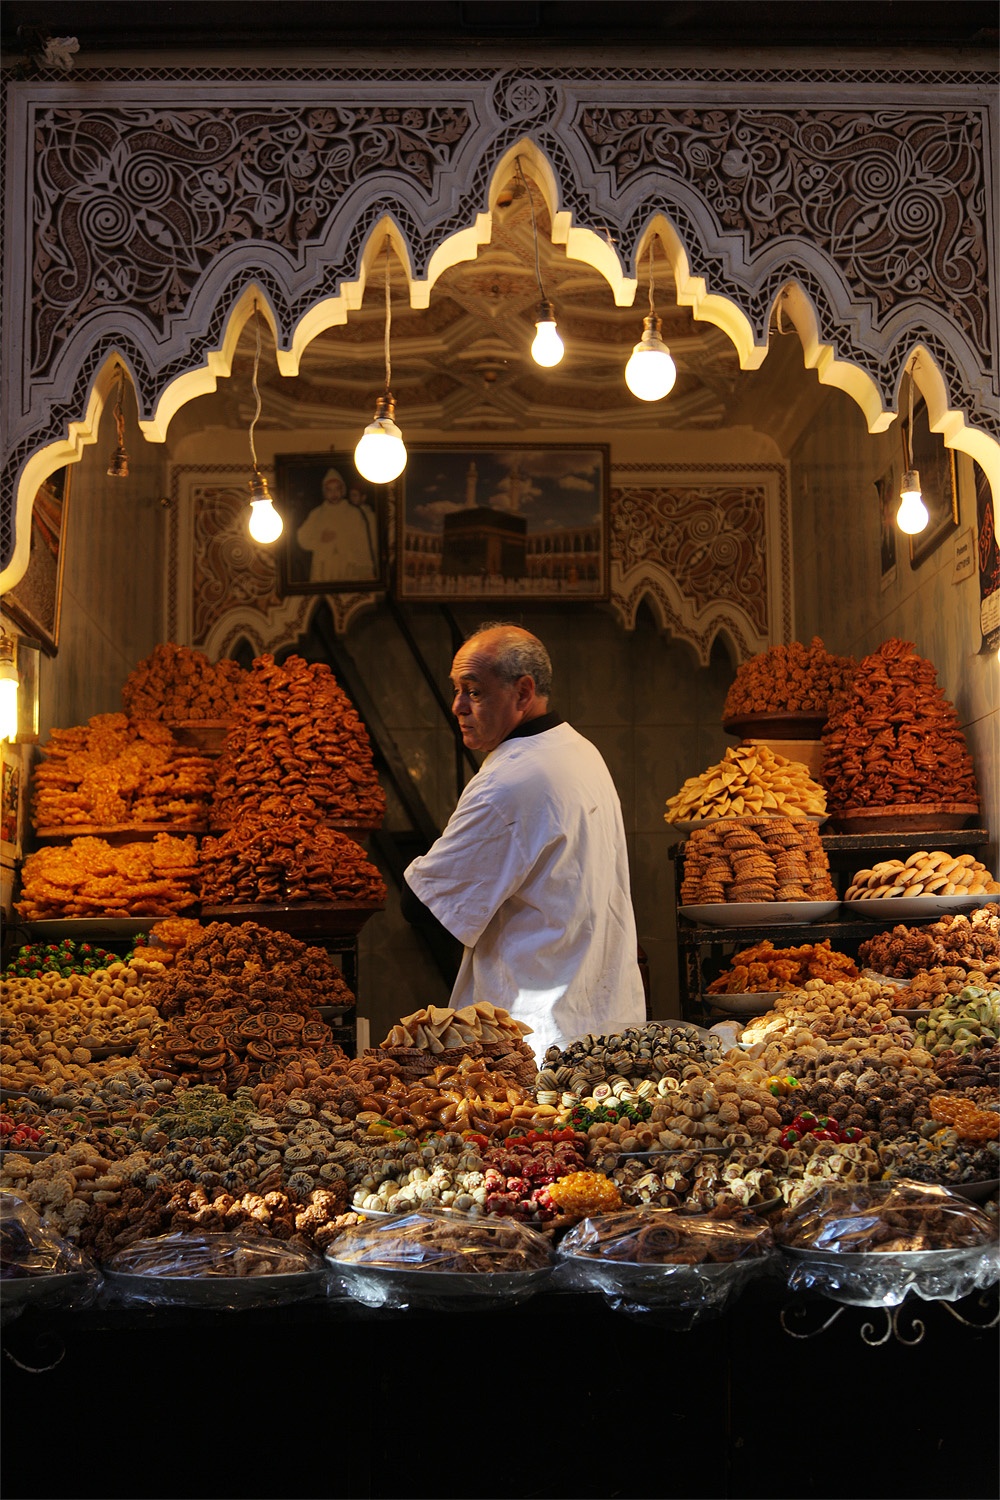 bill-hocker-sweets-marrakech-marocco-2012